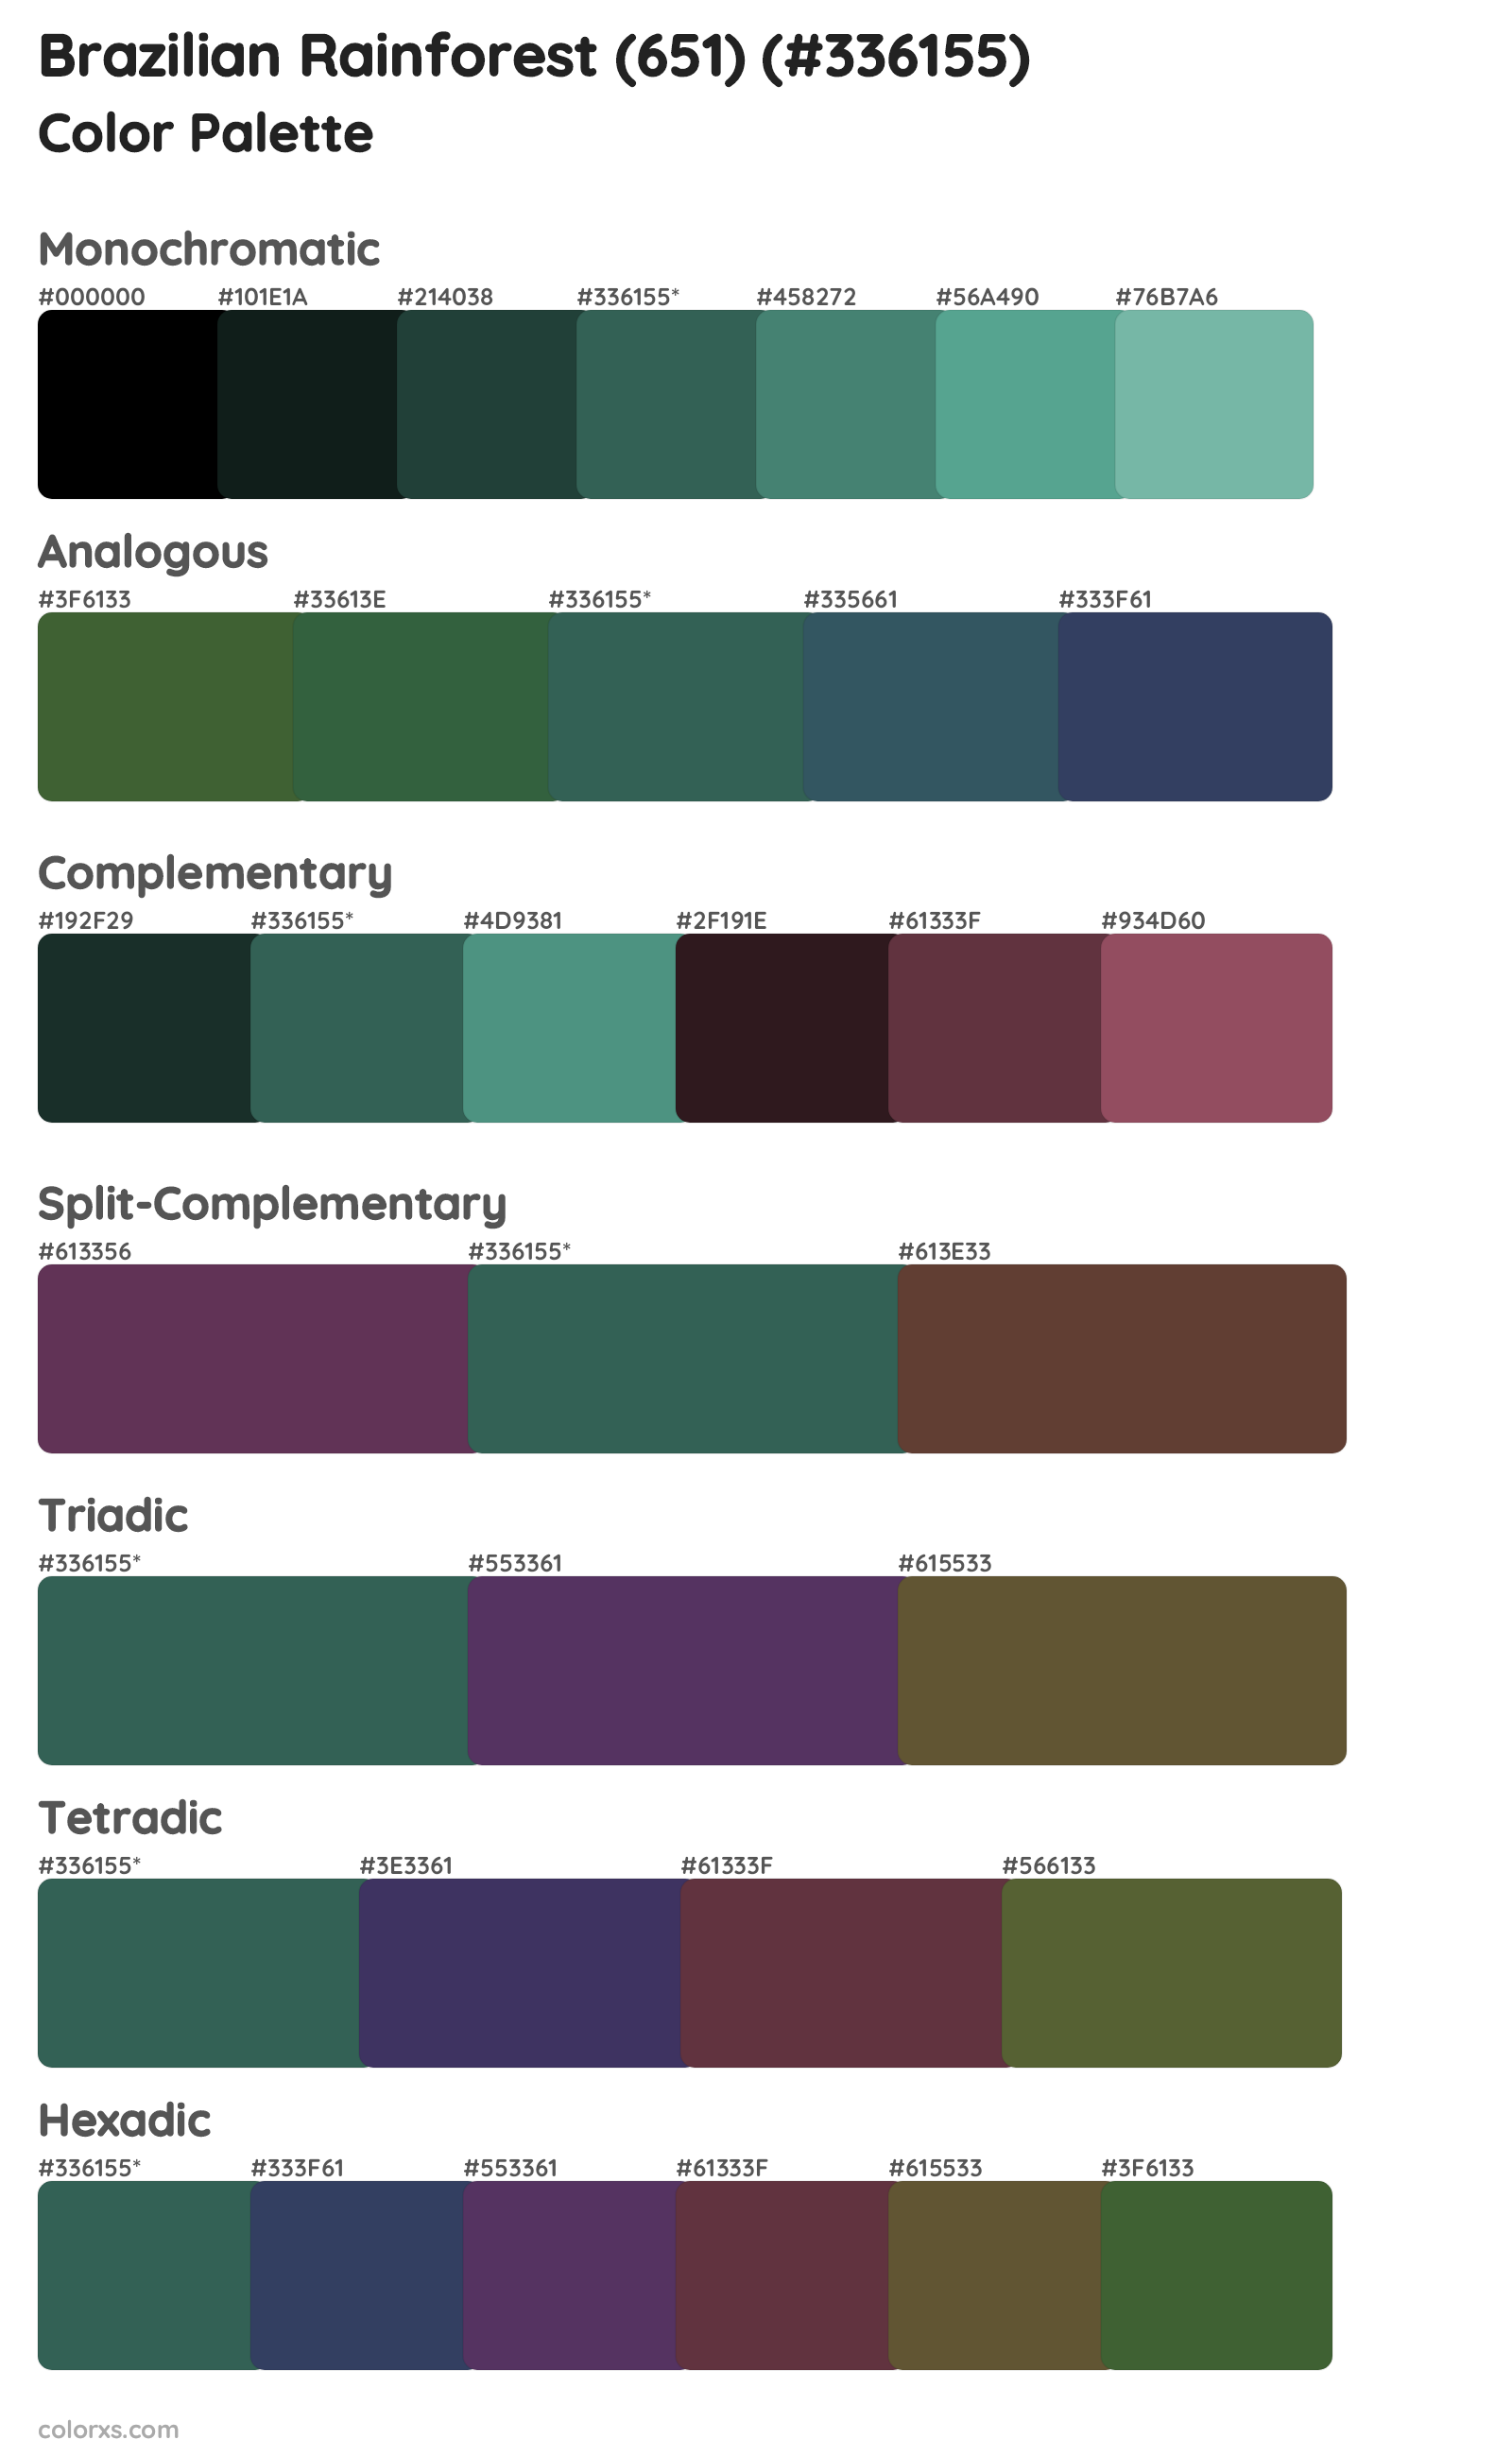 Brazilian Rainforest (651) Color Scheme Palettes